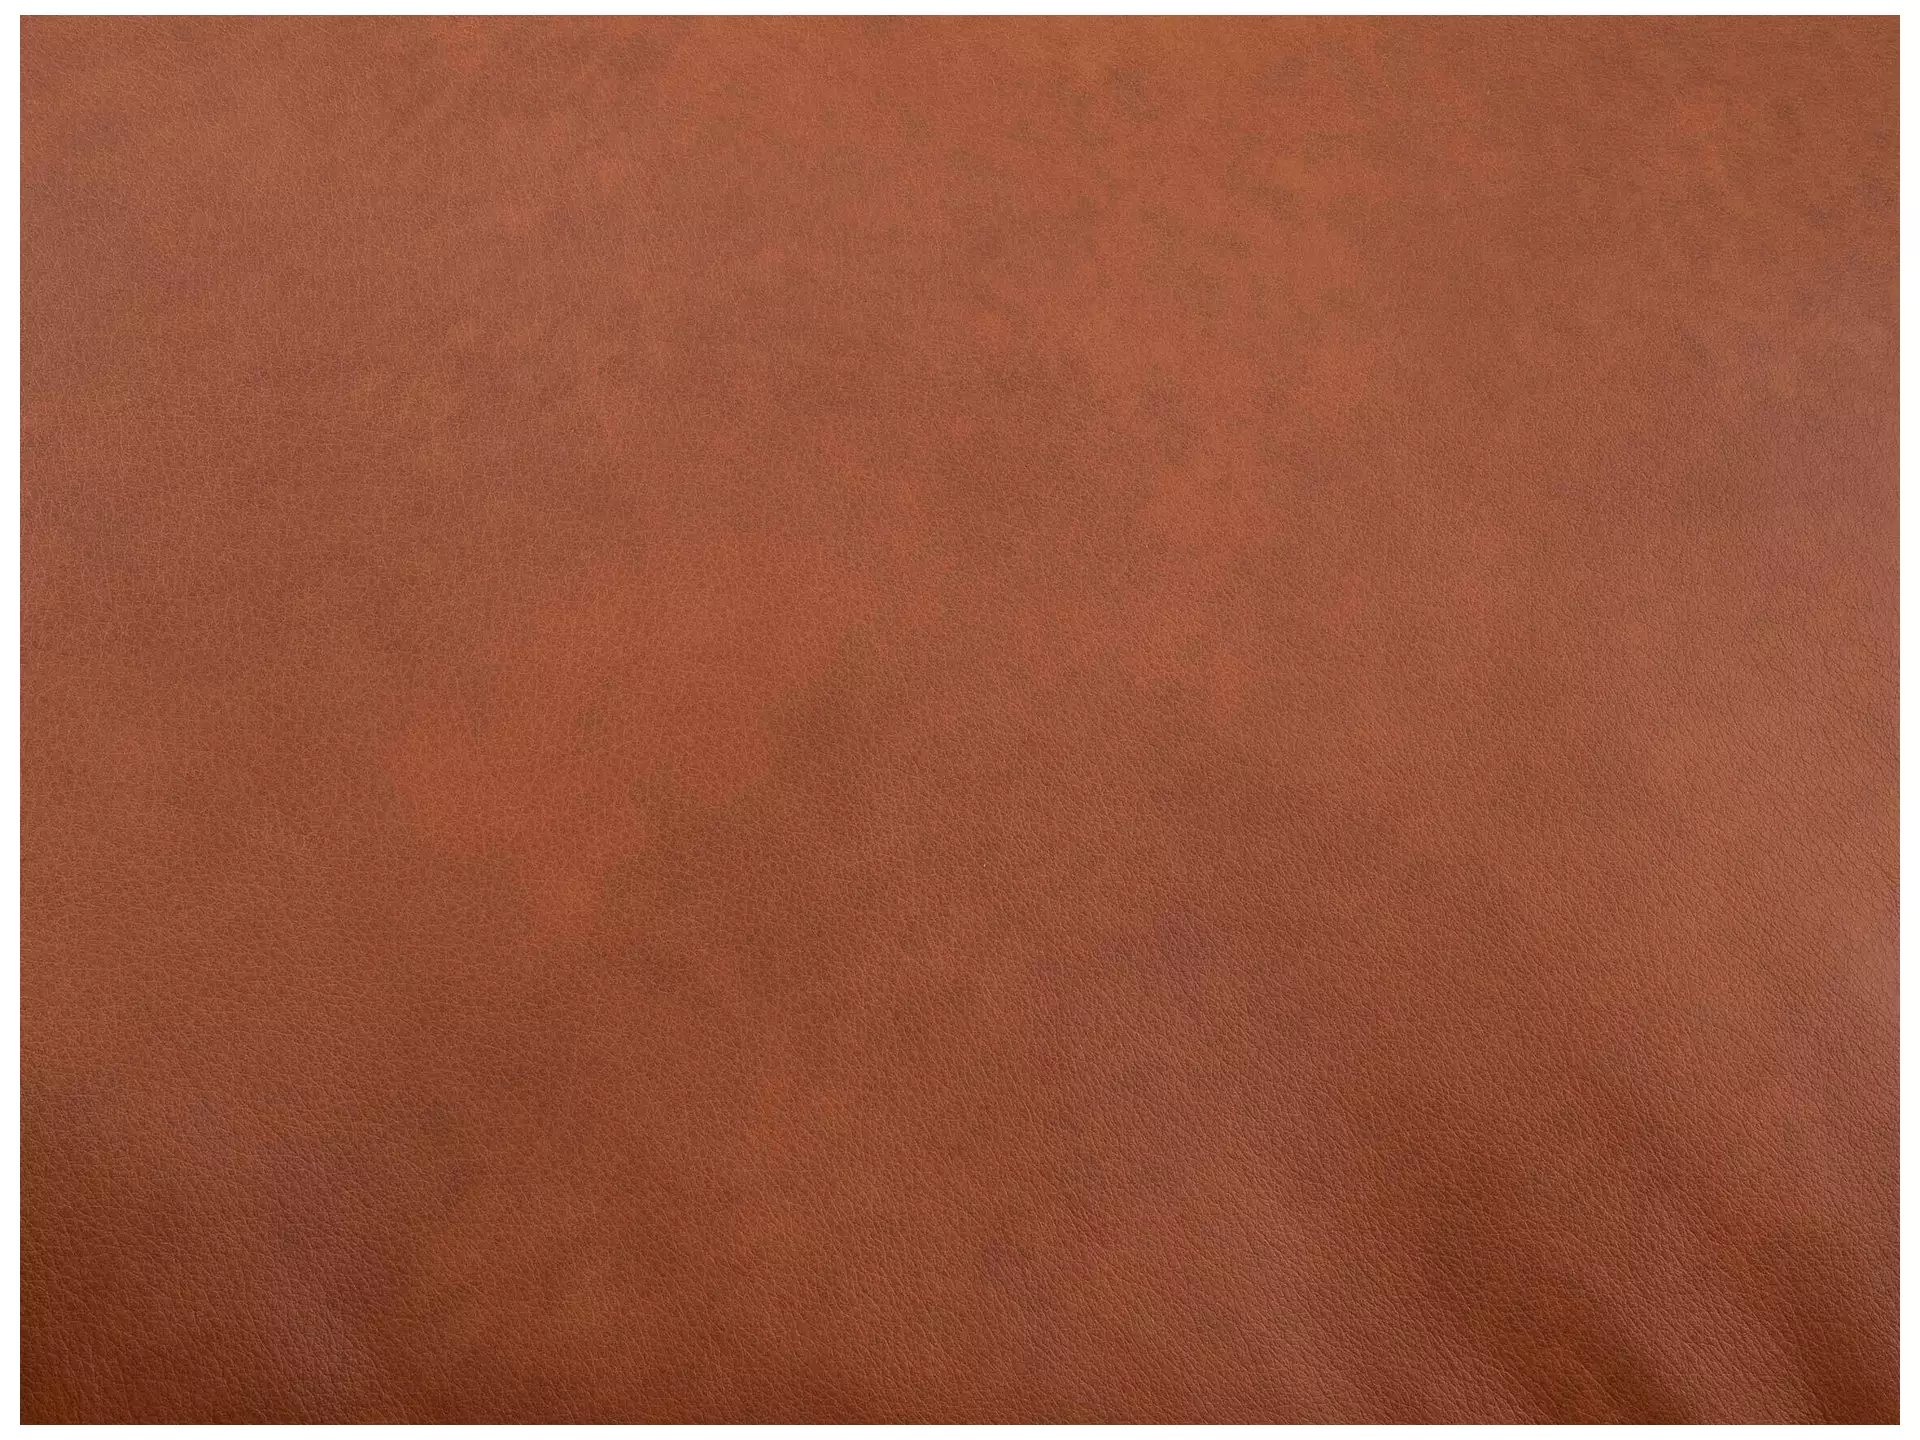 Sofa Foscaari b: 193 cm Schillig Willi / Farbe: Cognac, Material: Leder